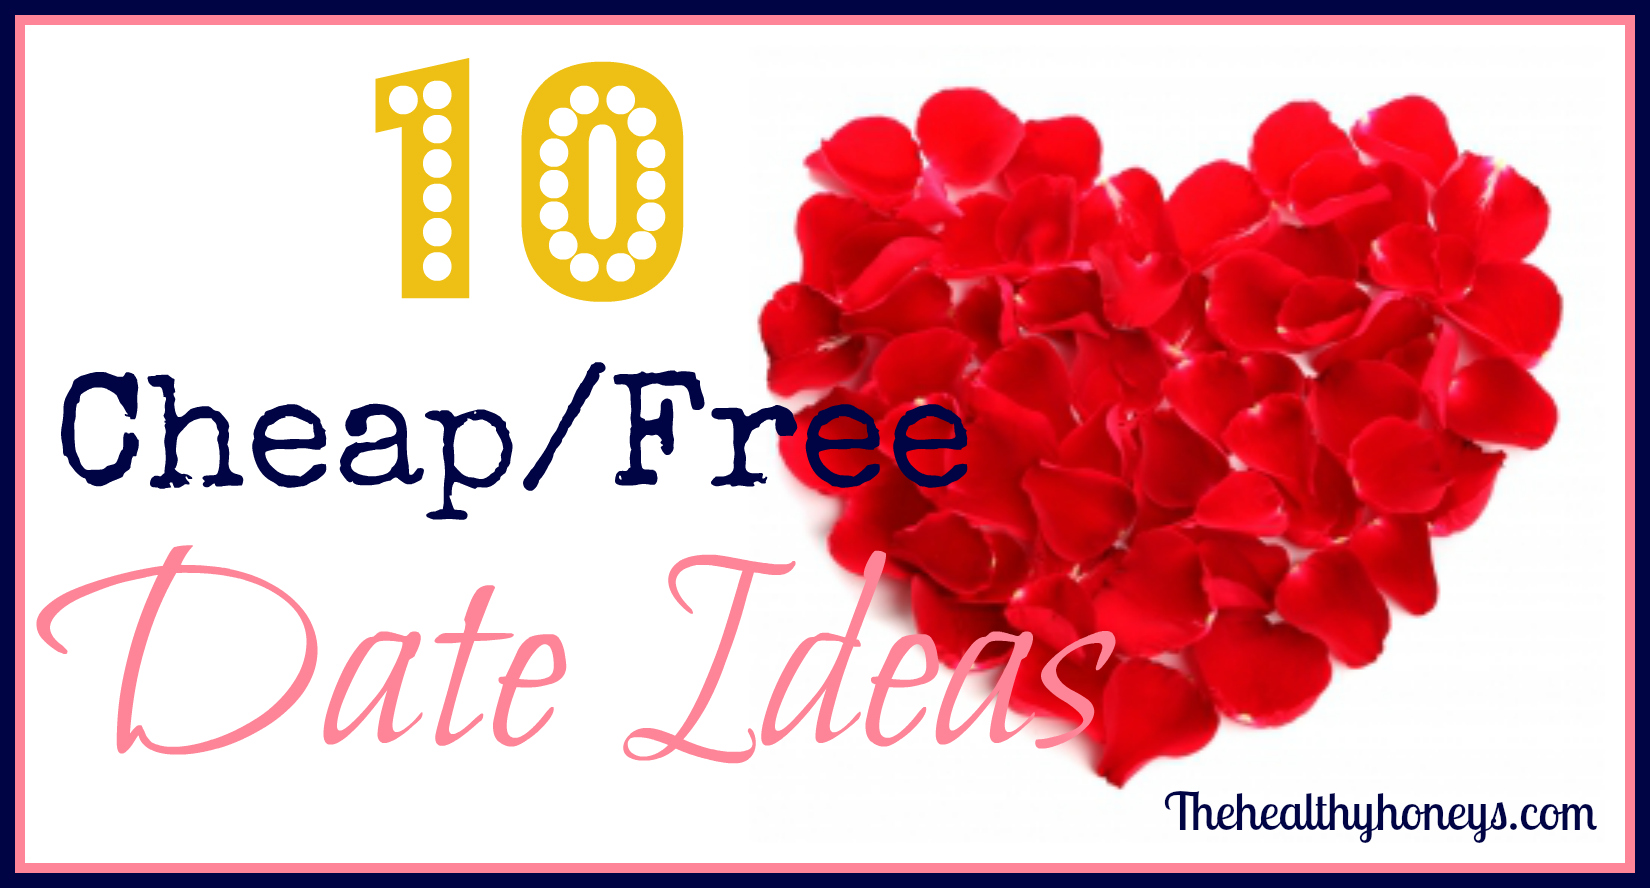 10 Cheap/Free Date Ideas